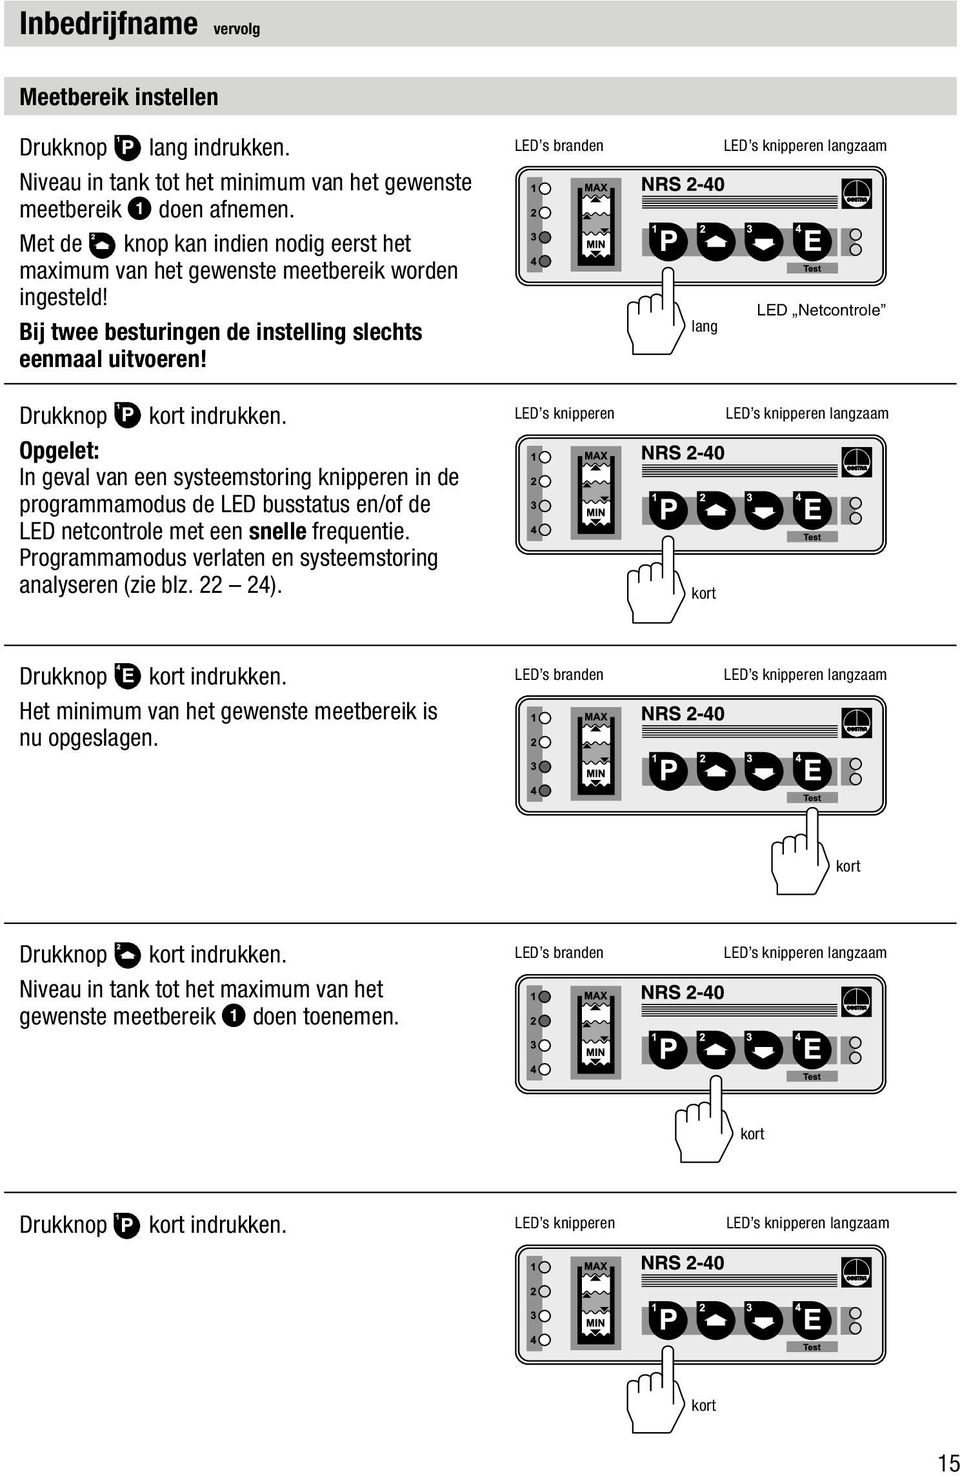 Opgelet: In geval van een systeemstoring knipperen in de programmamodus de LED busstatus en/of de LED netcontrole met een snelle frequentie.